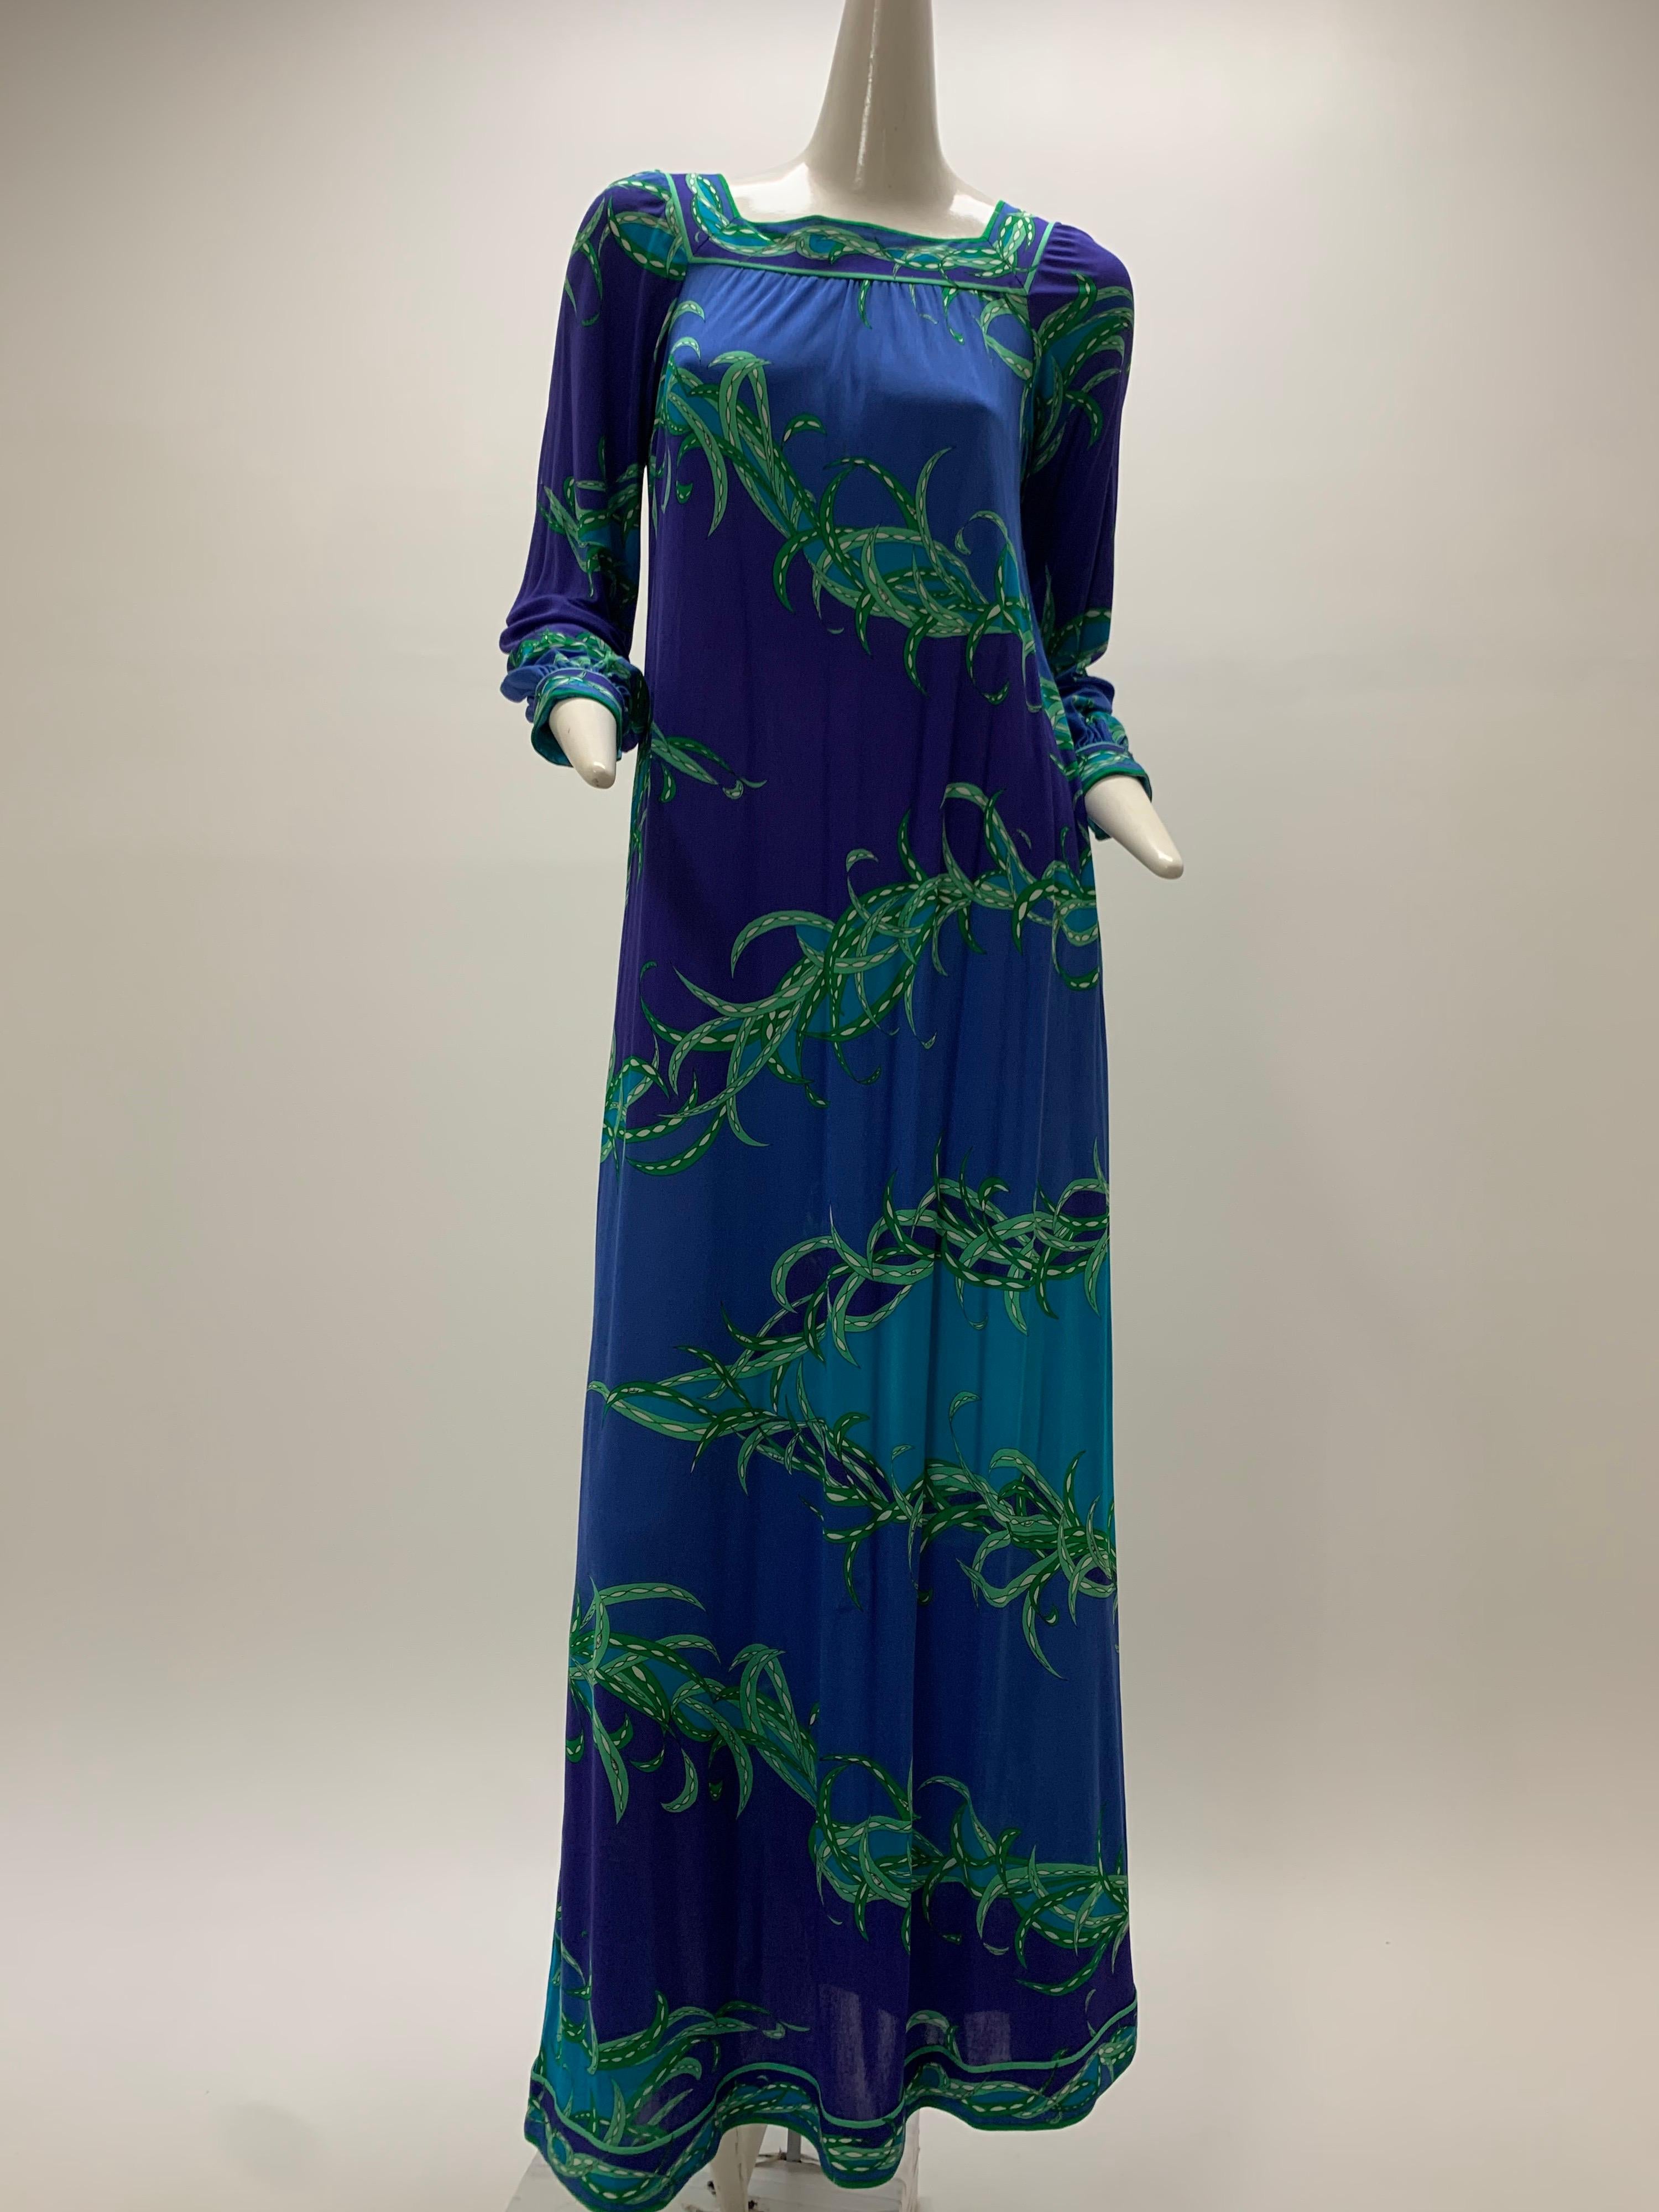 Magnifique robe maxi à manches longues en jersey de soie Emilio Pucci des années 1970, imprimée en violet, bleu, aqua et vert. Poignets et ourlet en bande et encolure carrée. Modèle à enfiler.